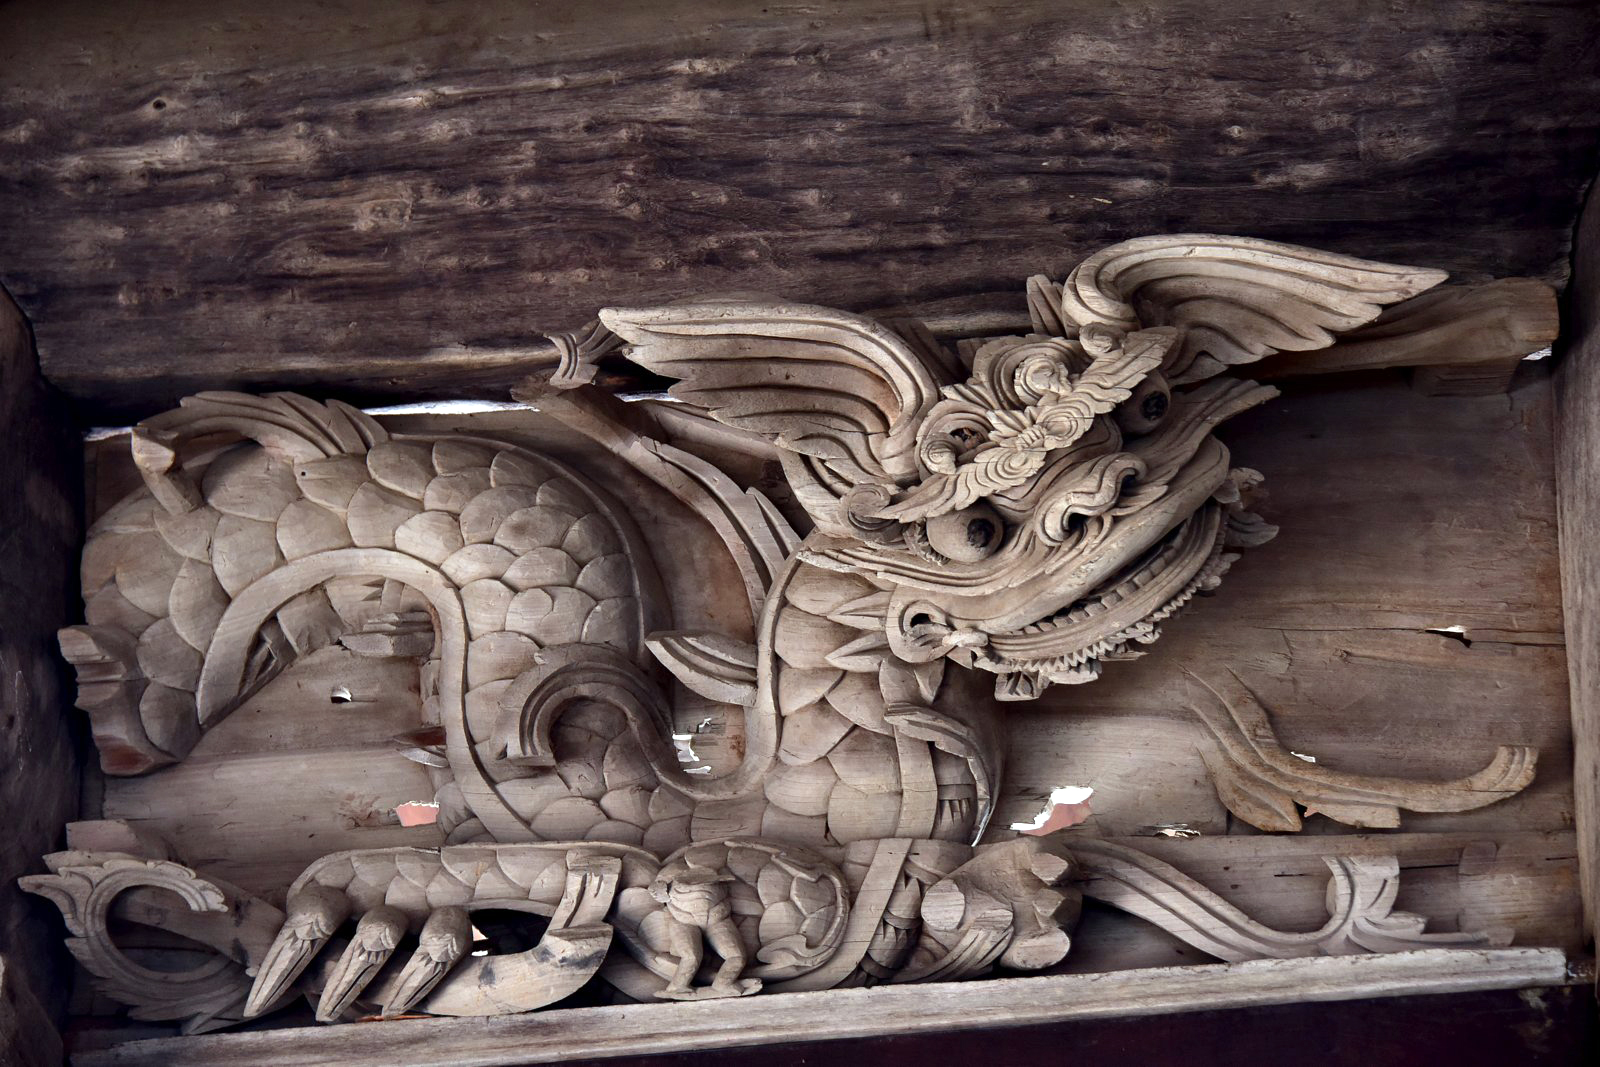 Chạm khắc đình làng và linh vật cùng đình Chu Quyến là một trong những tác phẩm nghệ thuật độc đáo nhất của nền văn hóa phương Đông. Những chi tiết tinh xảo và hoa văn độc đáo của chúng chắc chắn sẽ khiến bạn say mê. Hãy tìm hiểu về những bí mật đặc biệt của tác phẩm này và khám phá sự tuyệt vời của nó!